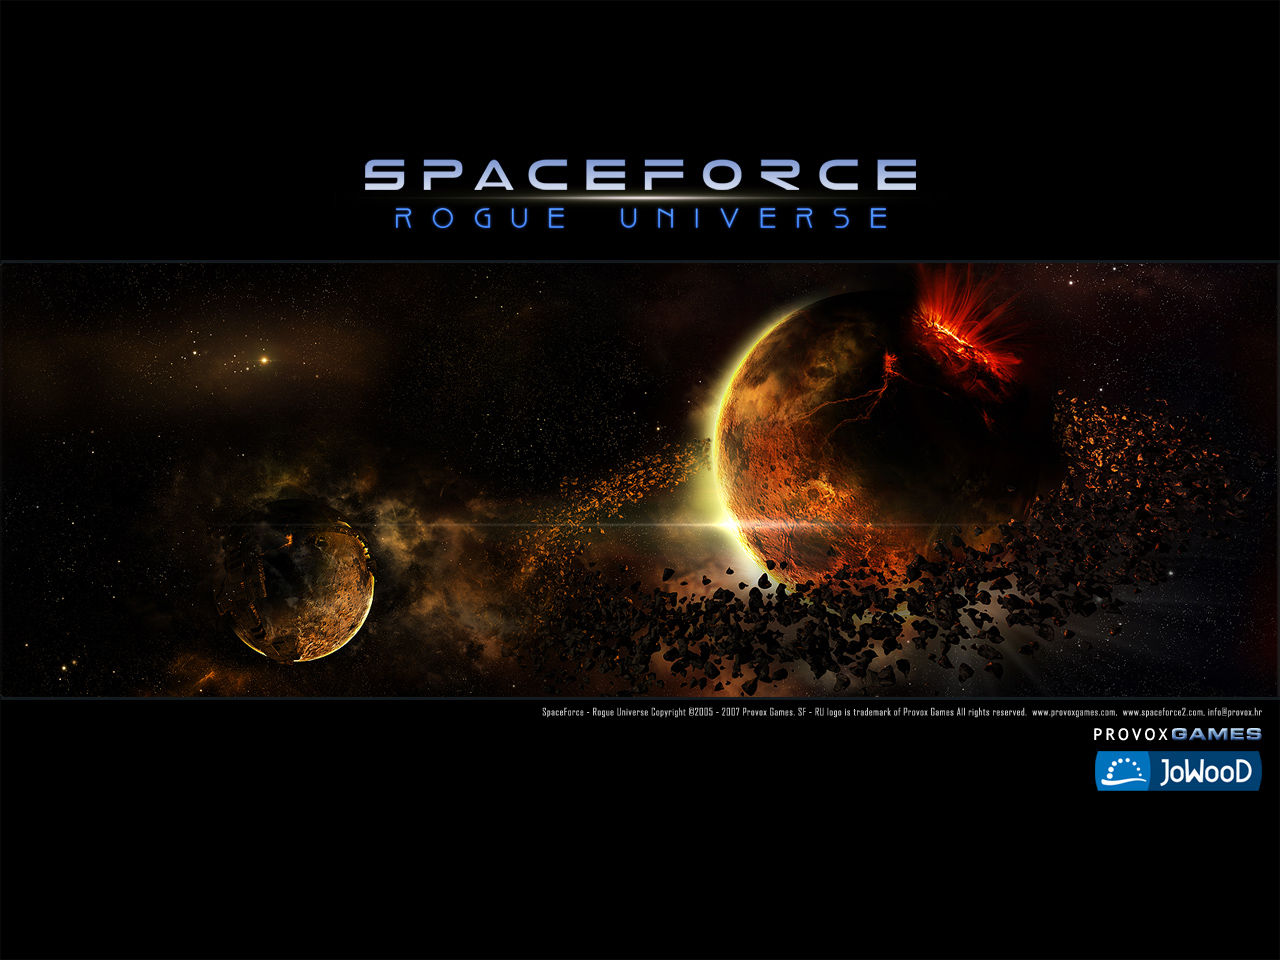 Spaceforce_02_1280x960.jpg